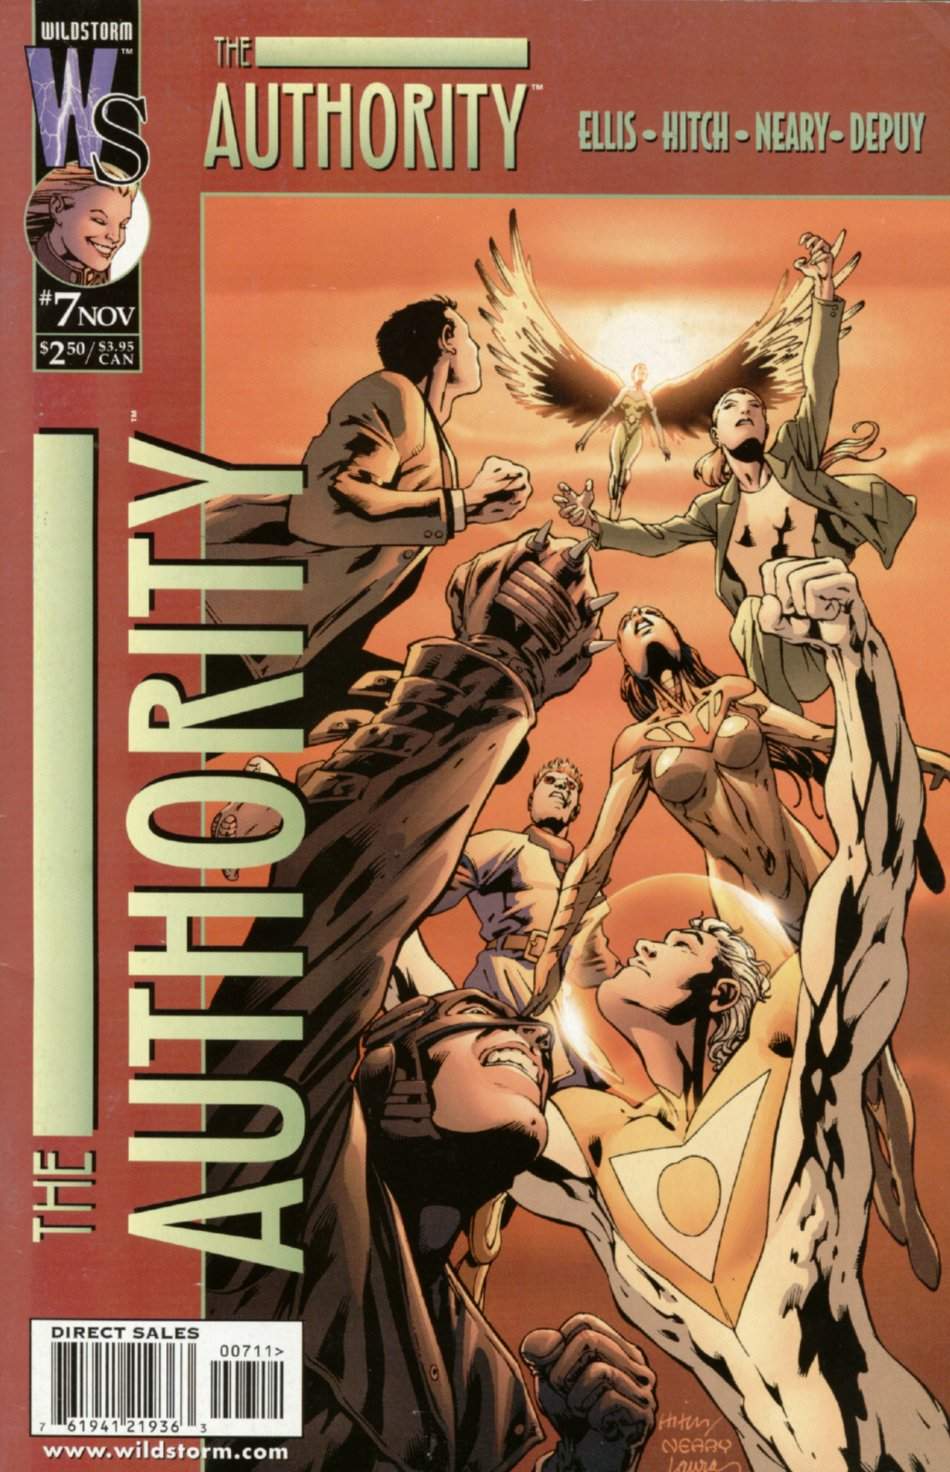 The Authority Vol. 1 #7